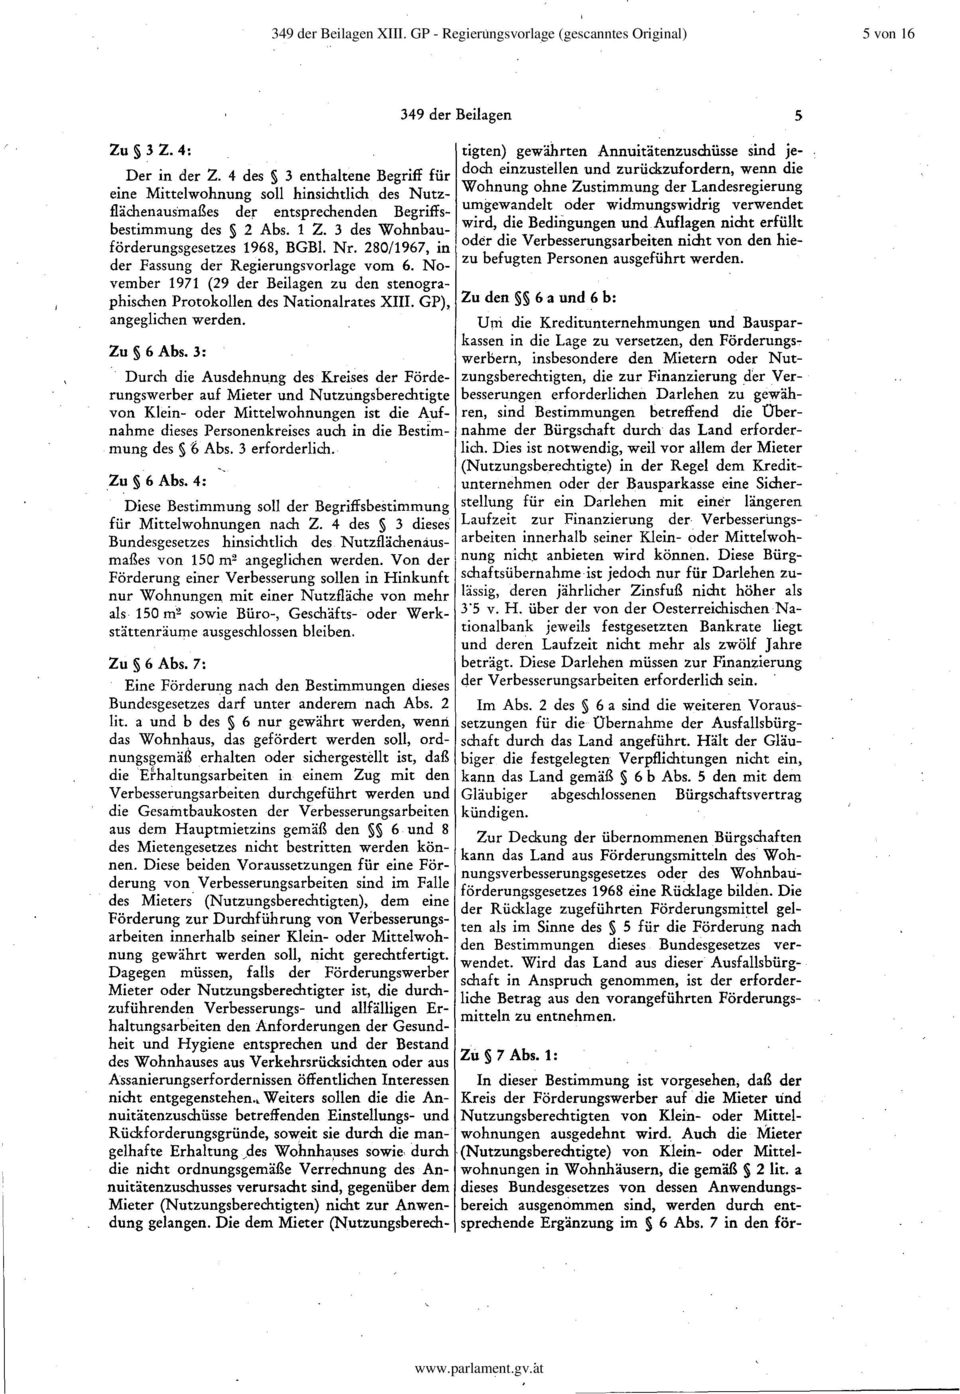 280/1967, in der Fassung der Regierungsvorlage vom 6. November 1971 (29 der Beilagen zu den stenographischen Protokollen des Nationalrates XIII. GP), angeglichen werden. Zu 6 Abs.